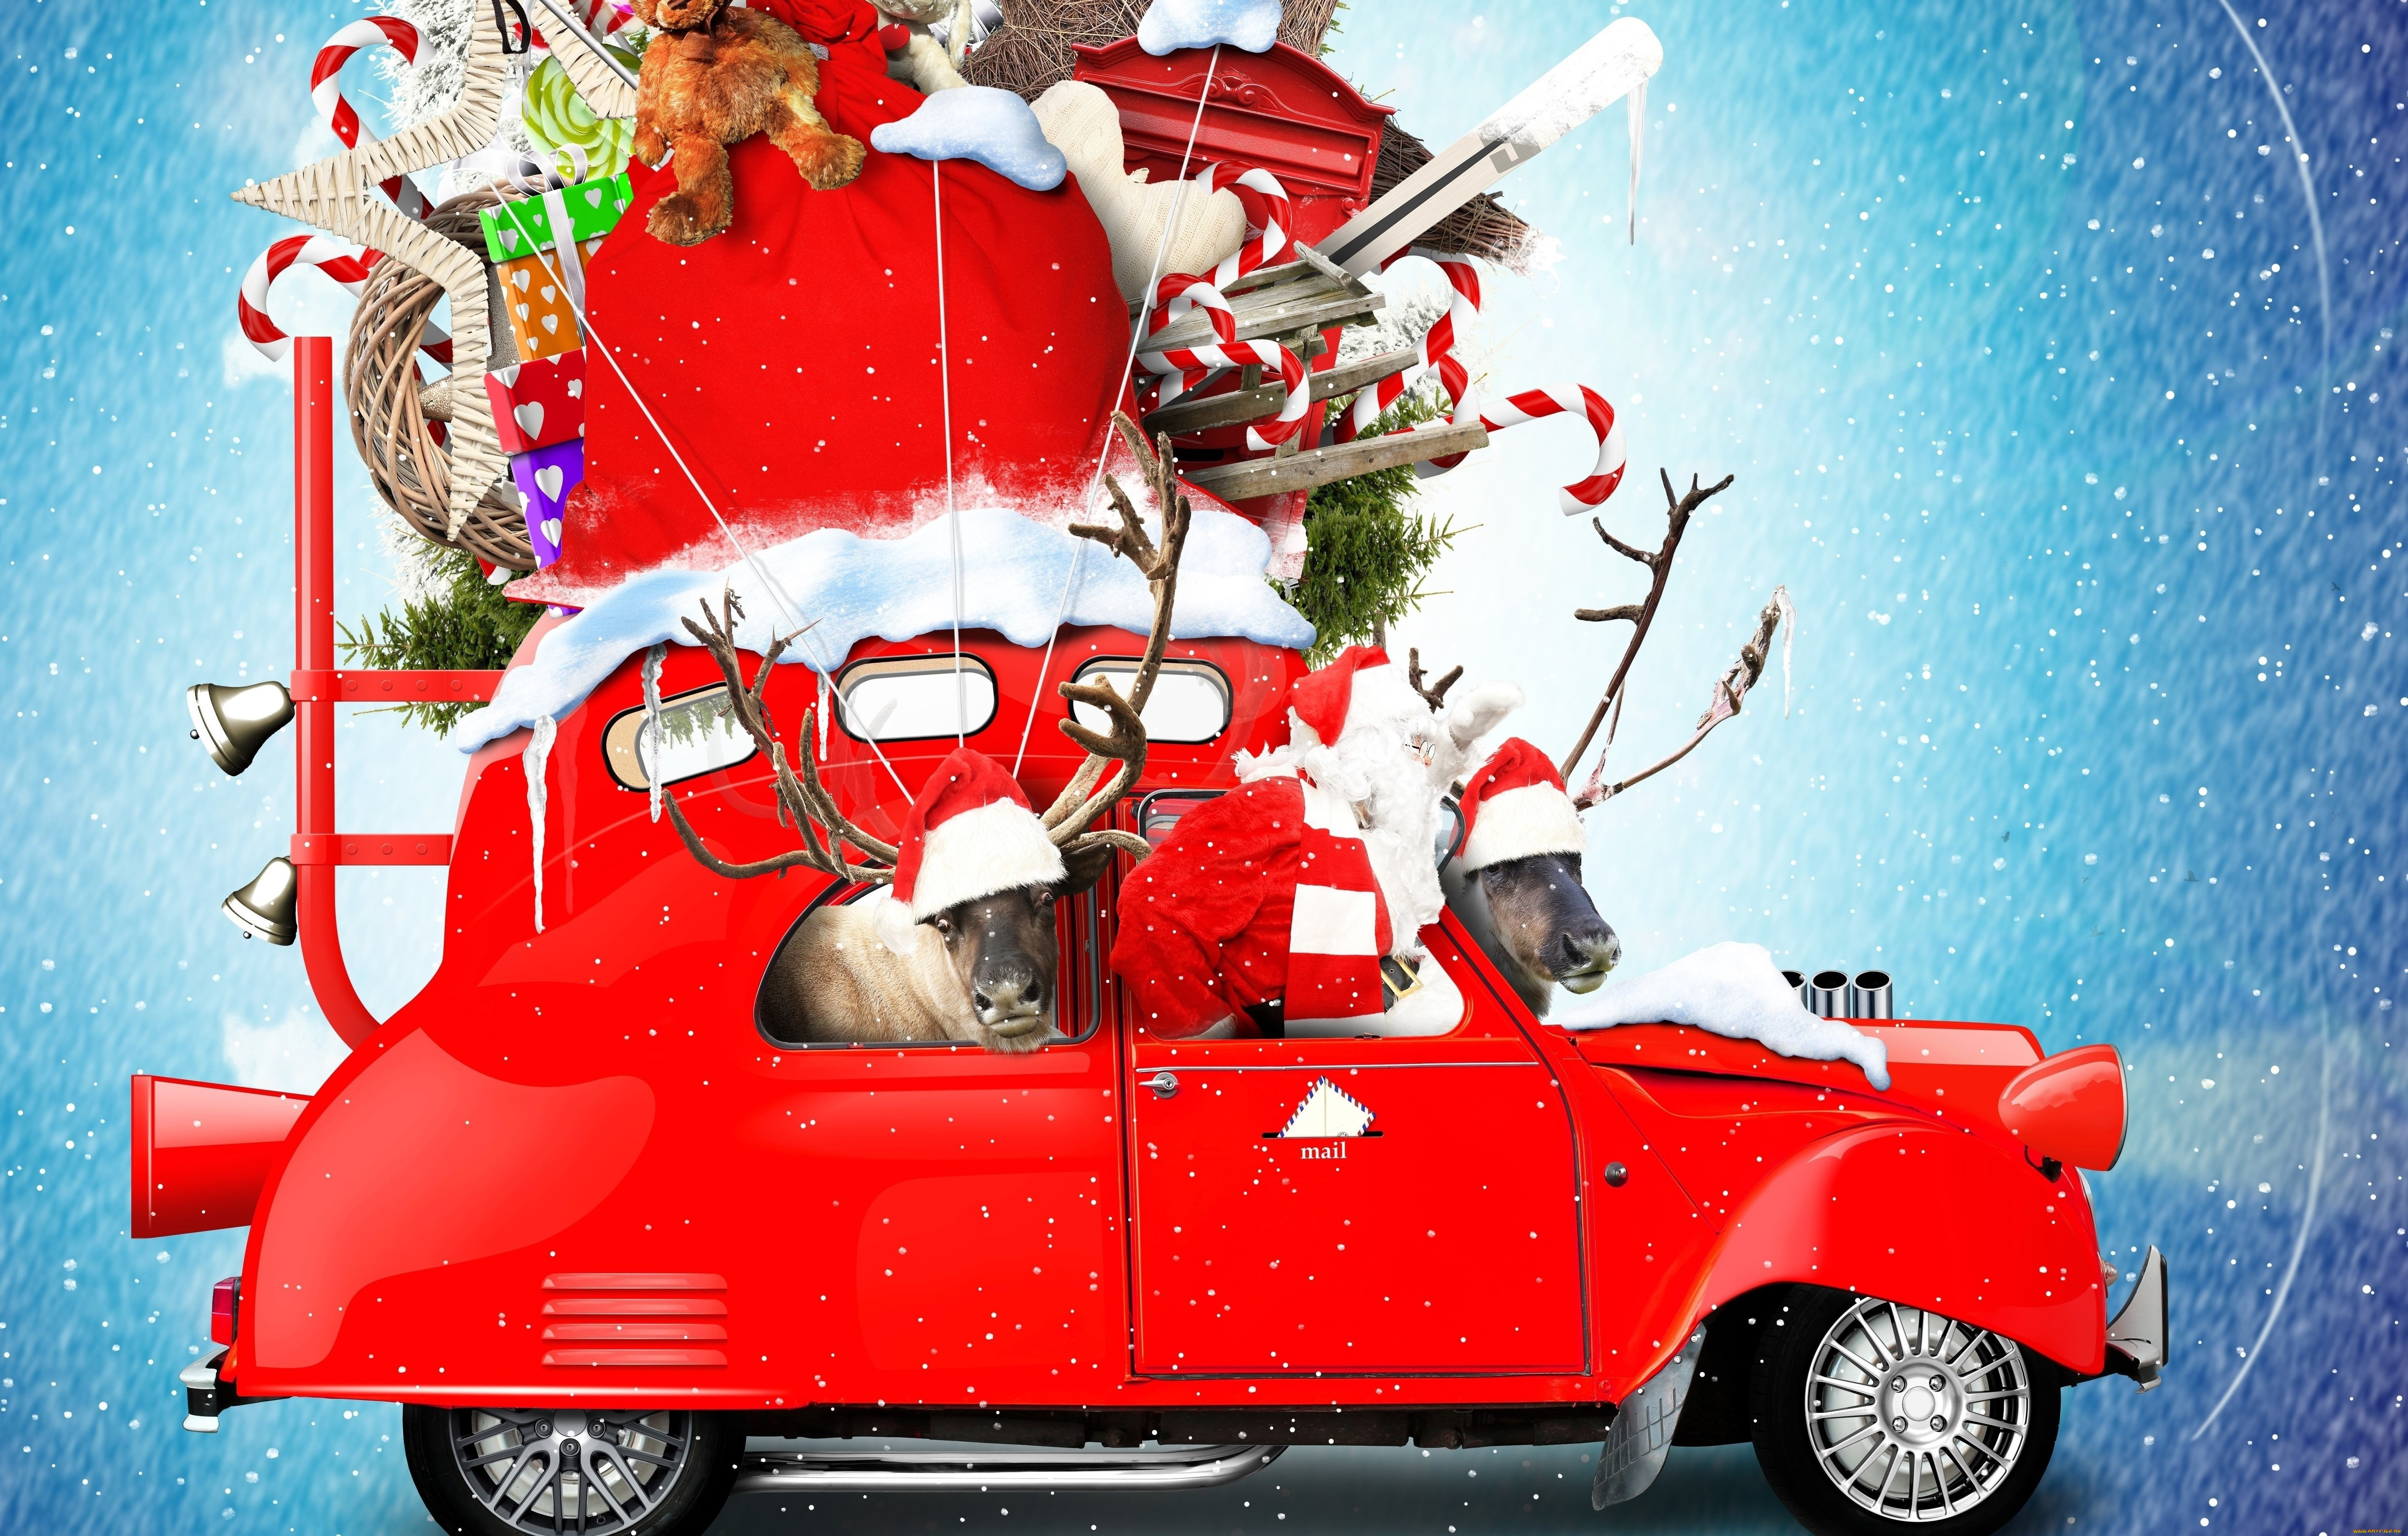 праздничные, дед, мороз, , санта, клаус, автомобиль, новый, год, санта-клаус, игрушки, снежинки, снег, дед, мороз, подарки, праздник, фон, плюшевые, леденцы, олени, красный, креатив, колокольчики, фотошоп, мешок, рождество